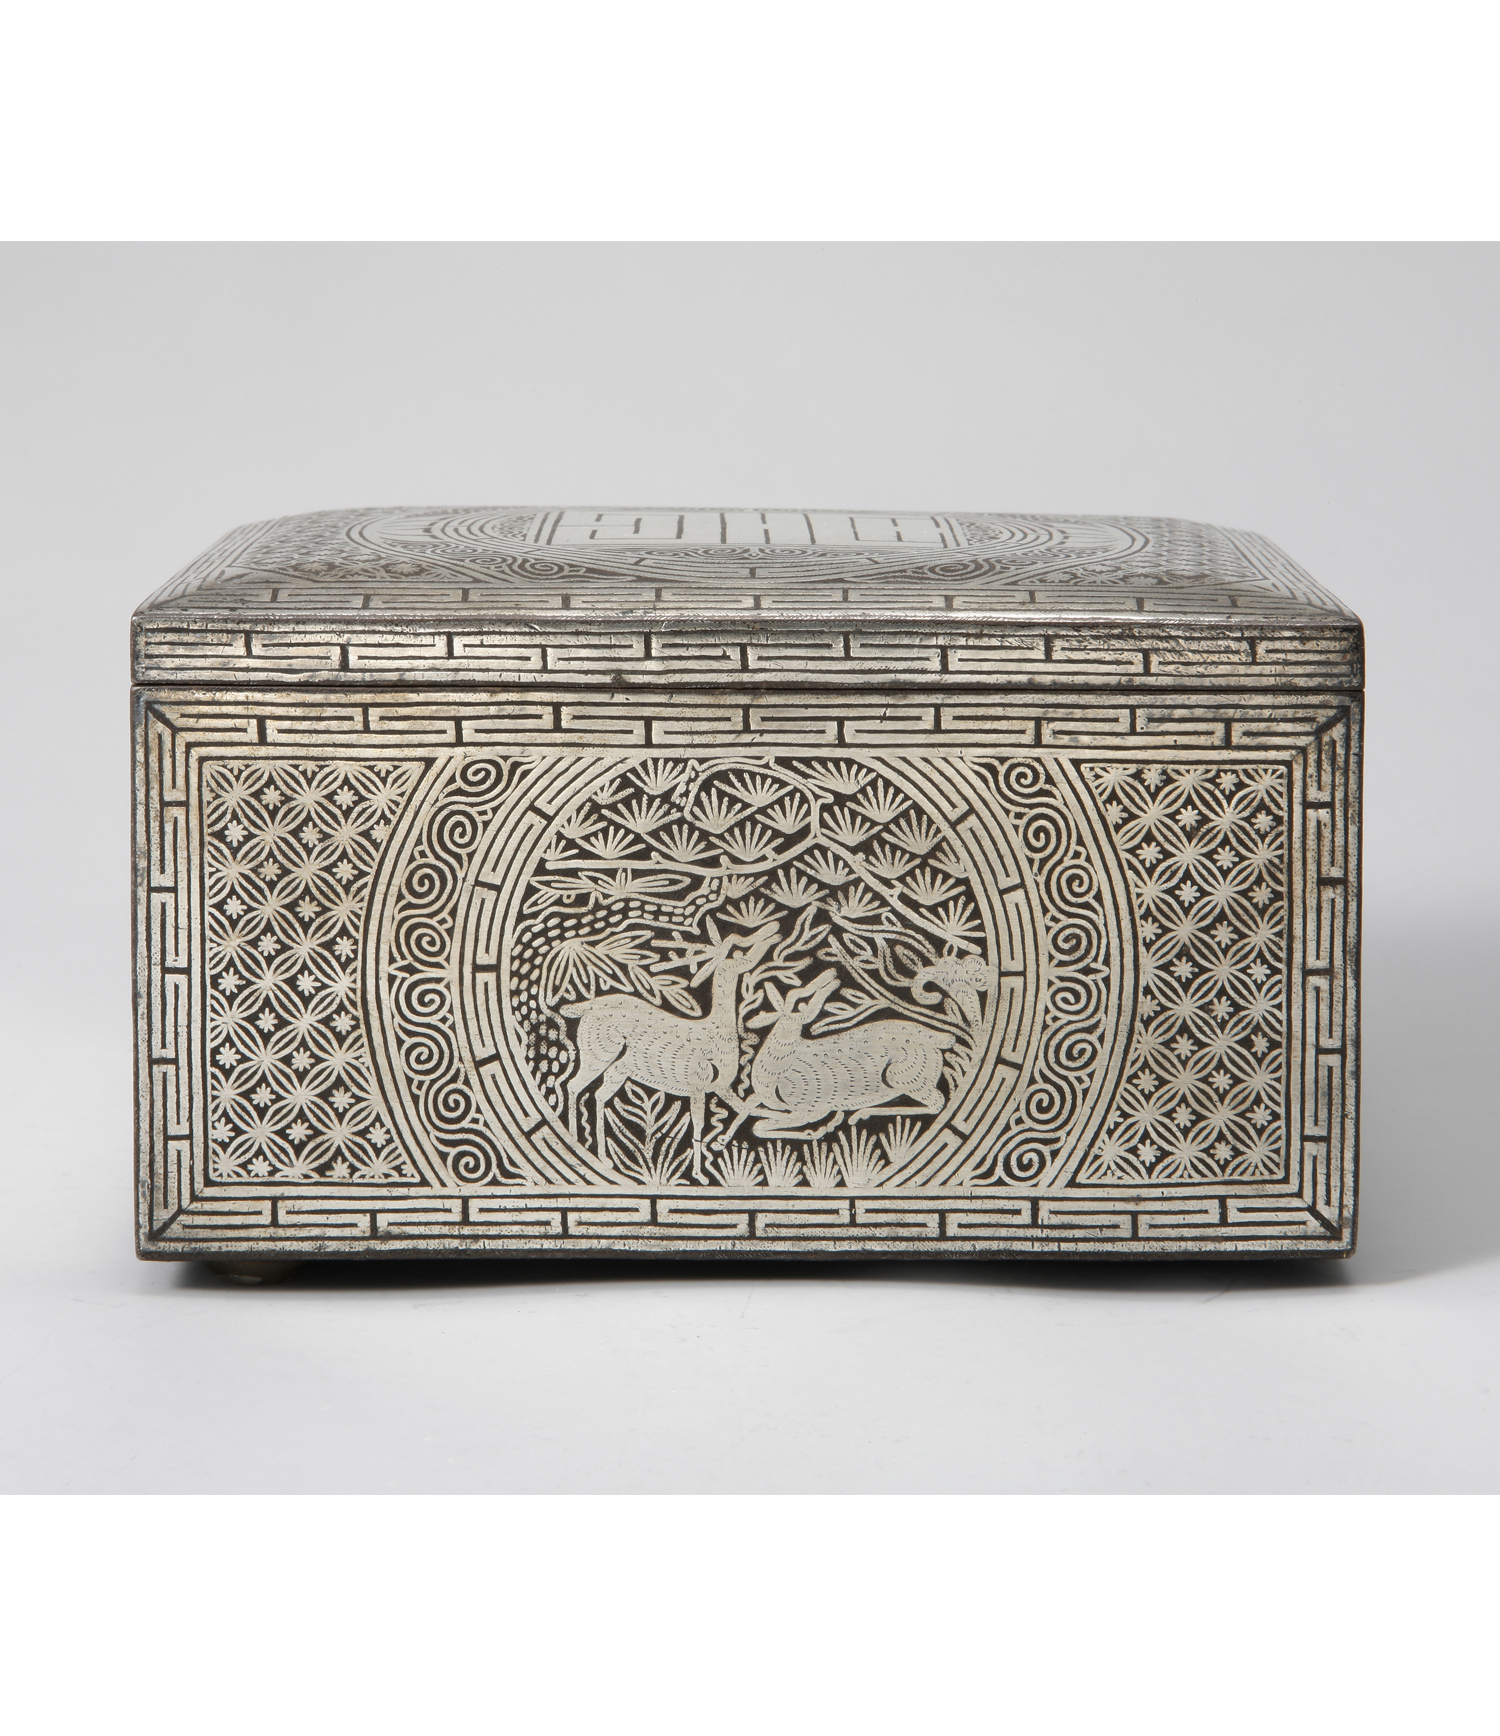 Tobacco Box with Ten Longevity Symbols Design in Silver Inlay